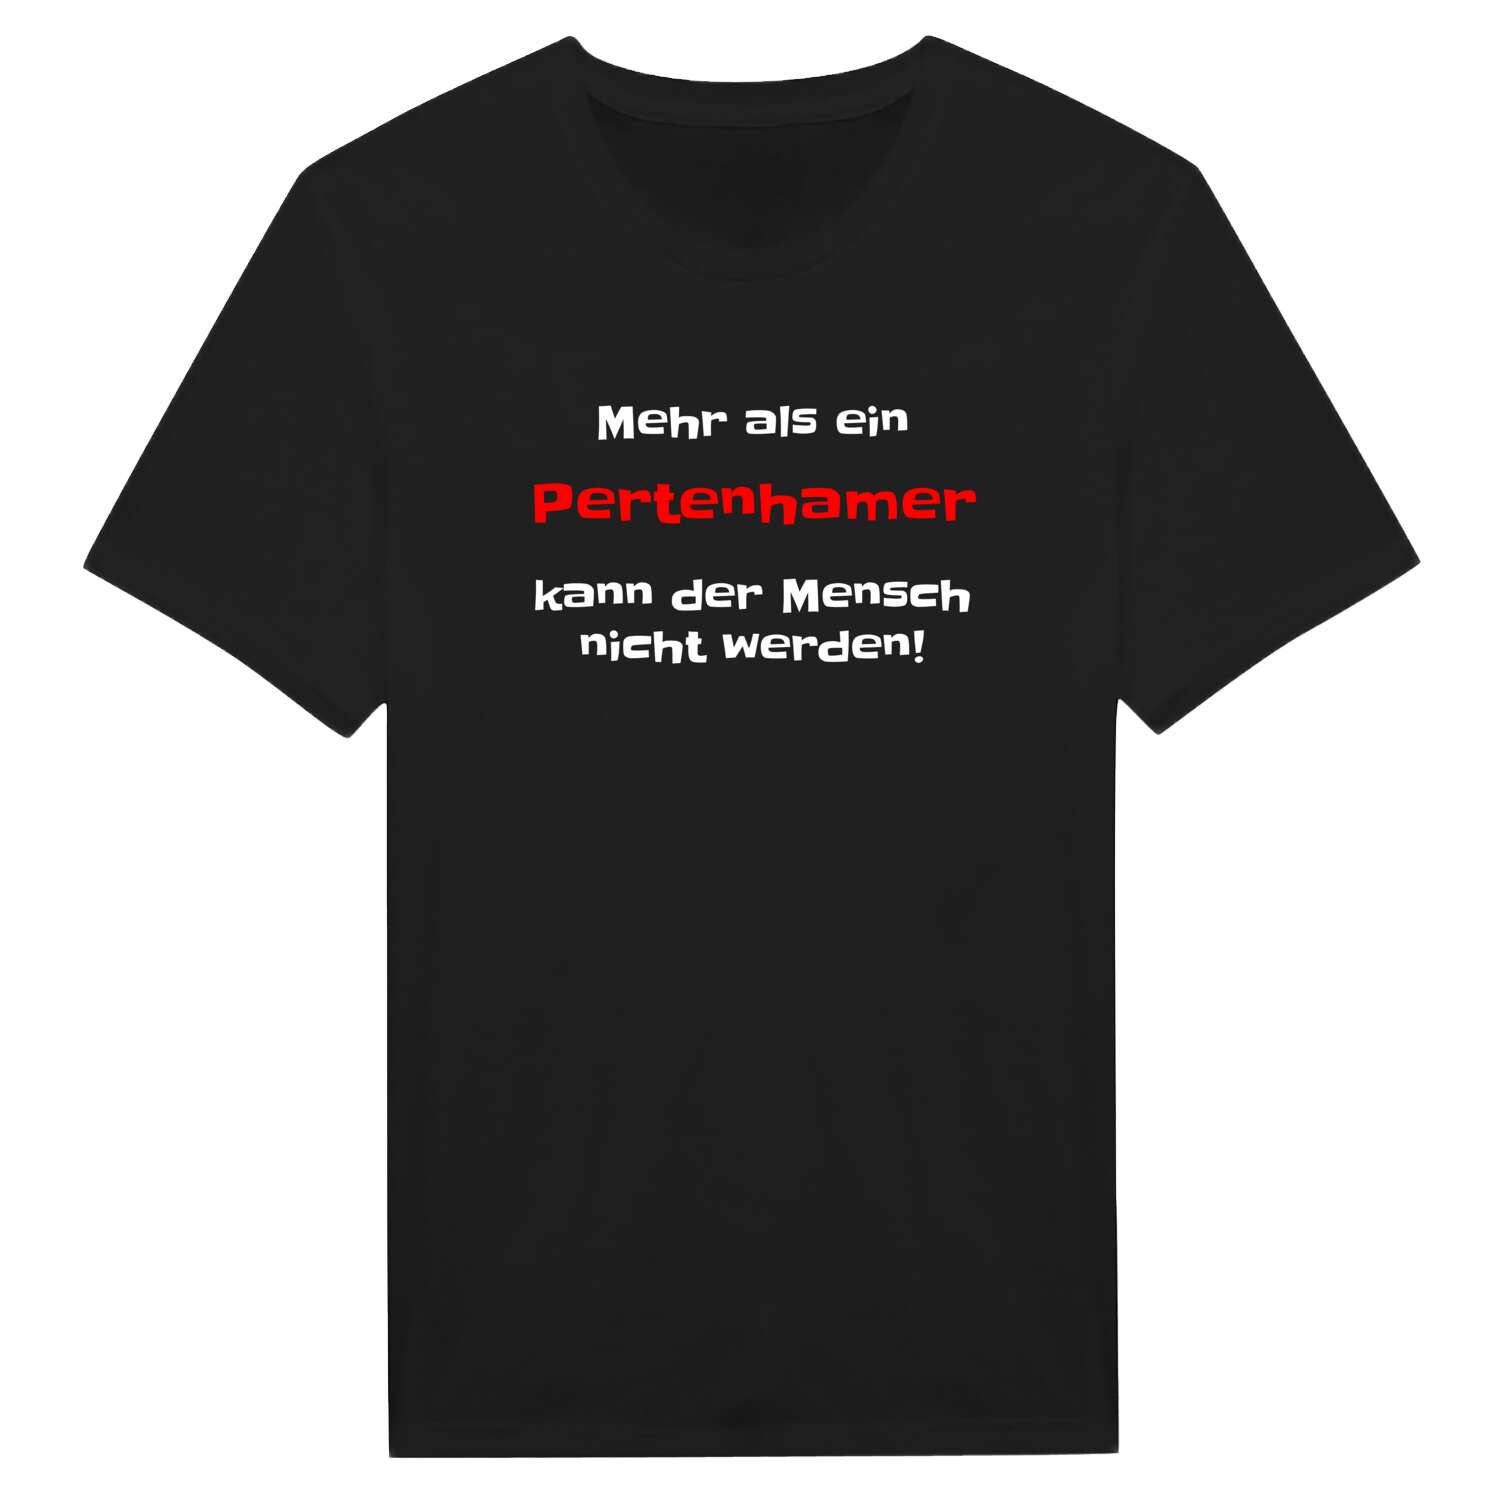 Pertenham T-Shirt »Mehr als ein«